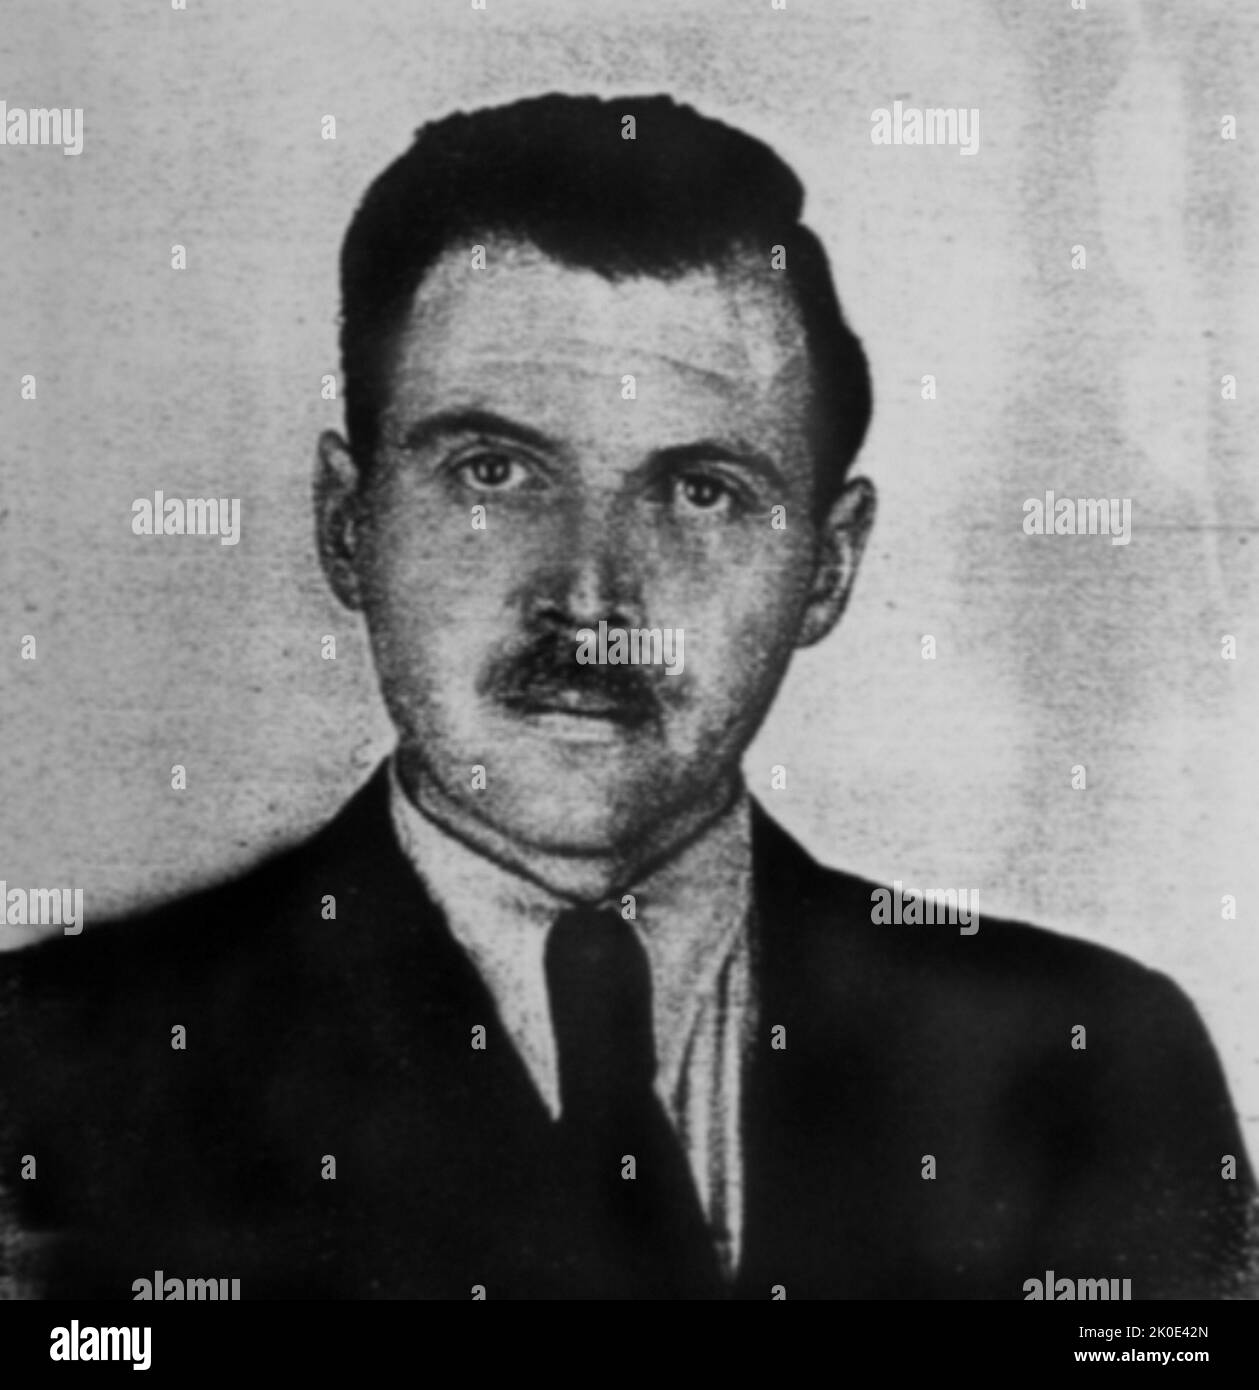 Josef Mengele (1911-1979), deutscher SS-Offizier. Foto, das 1956 von einem Polizeifotografen in Buenos Aires für Mengeles argentinisches Ausweisdokument aufgenommen wurde. Stockfoto